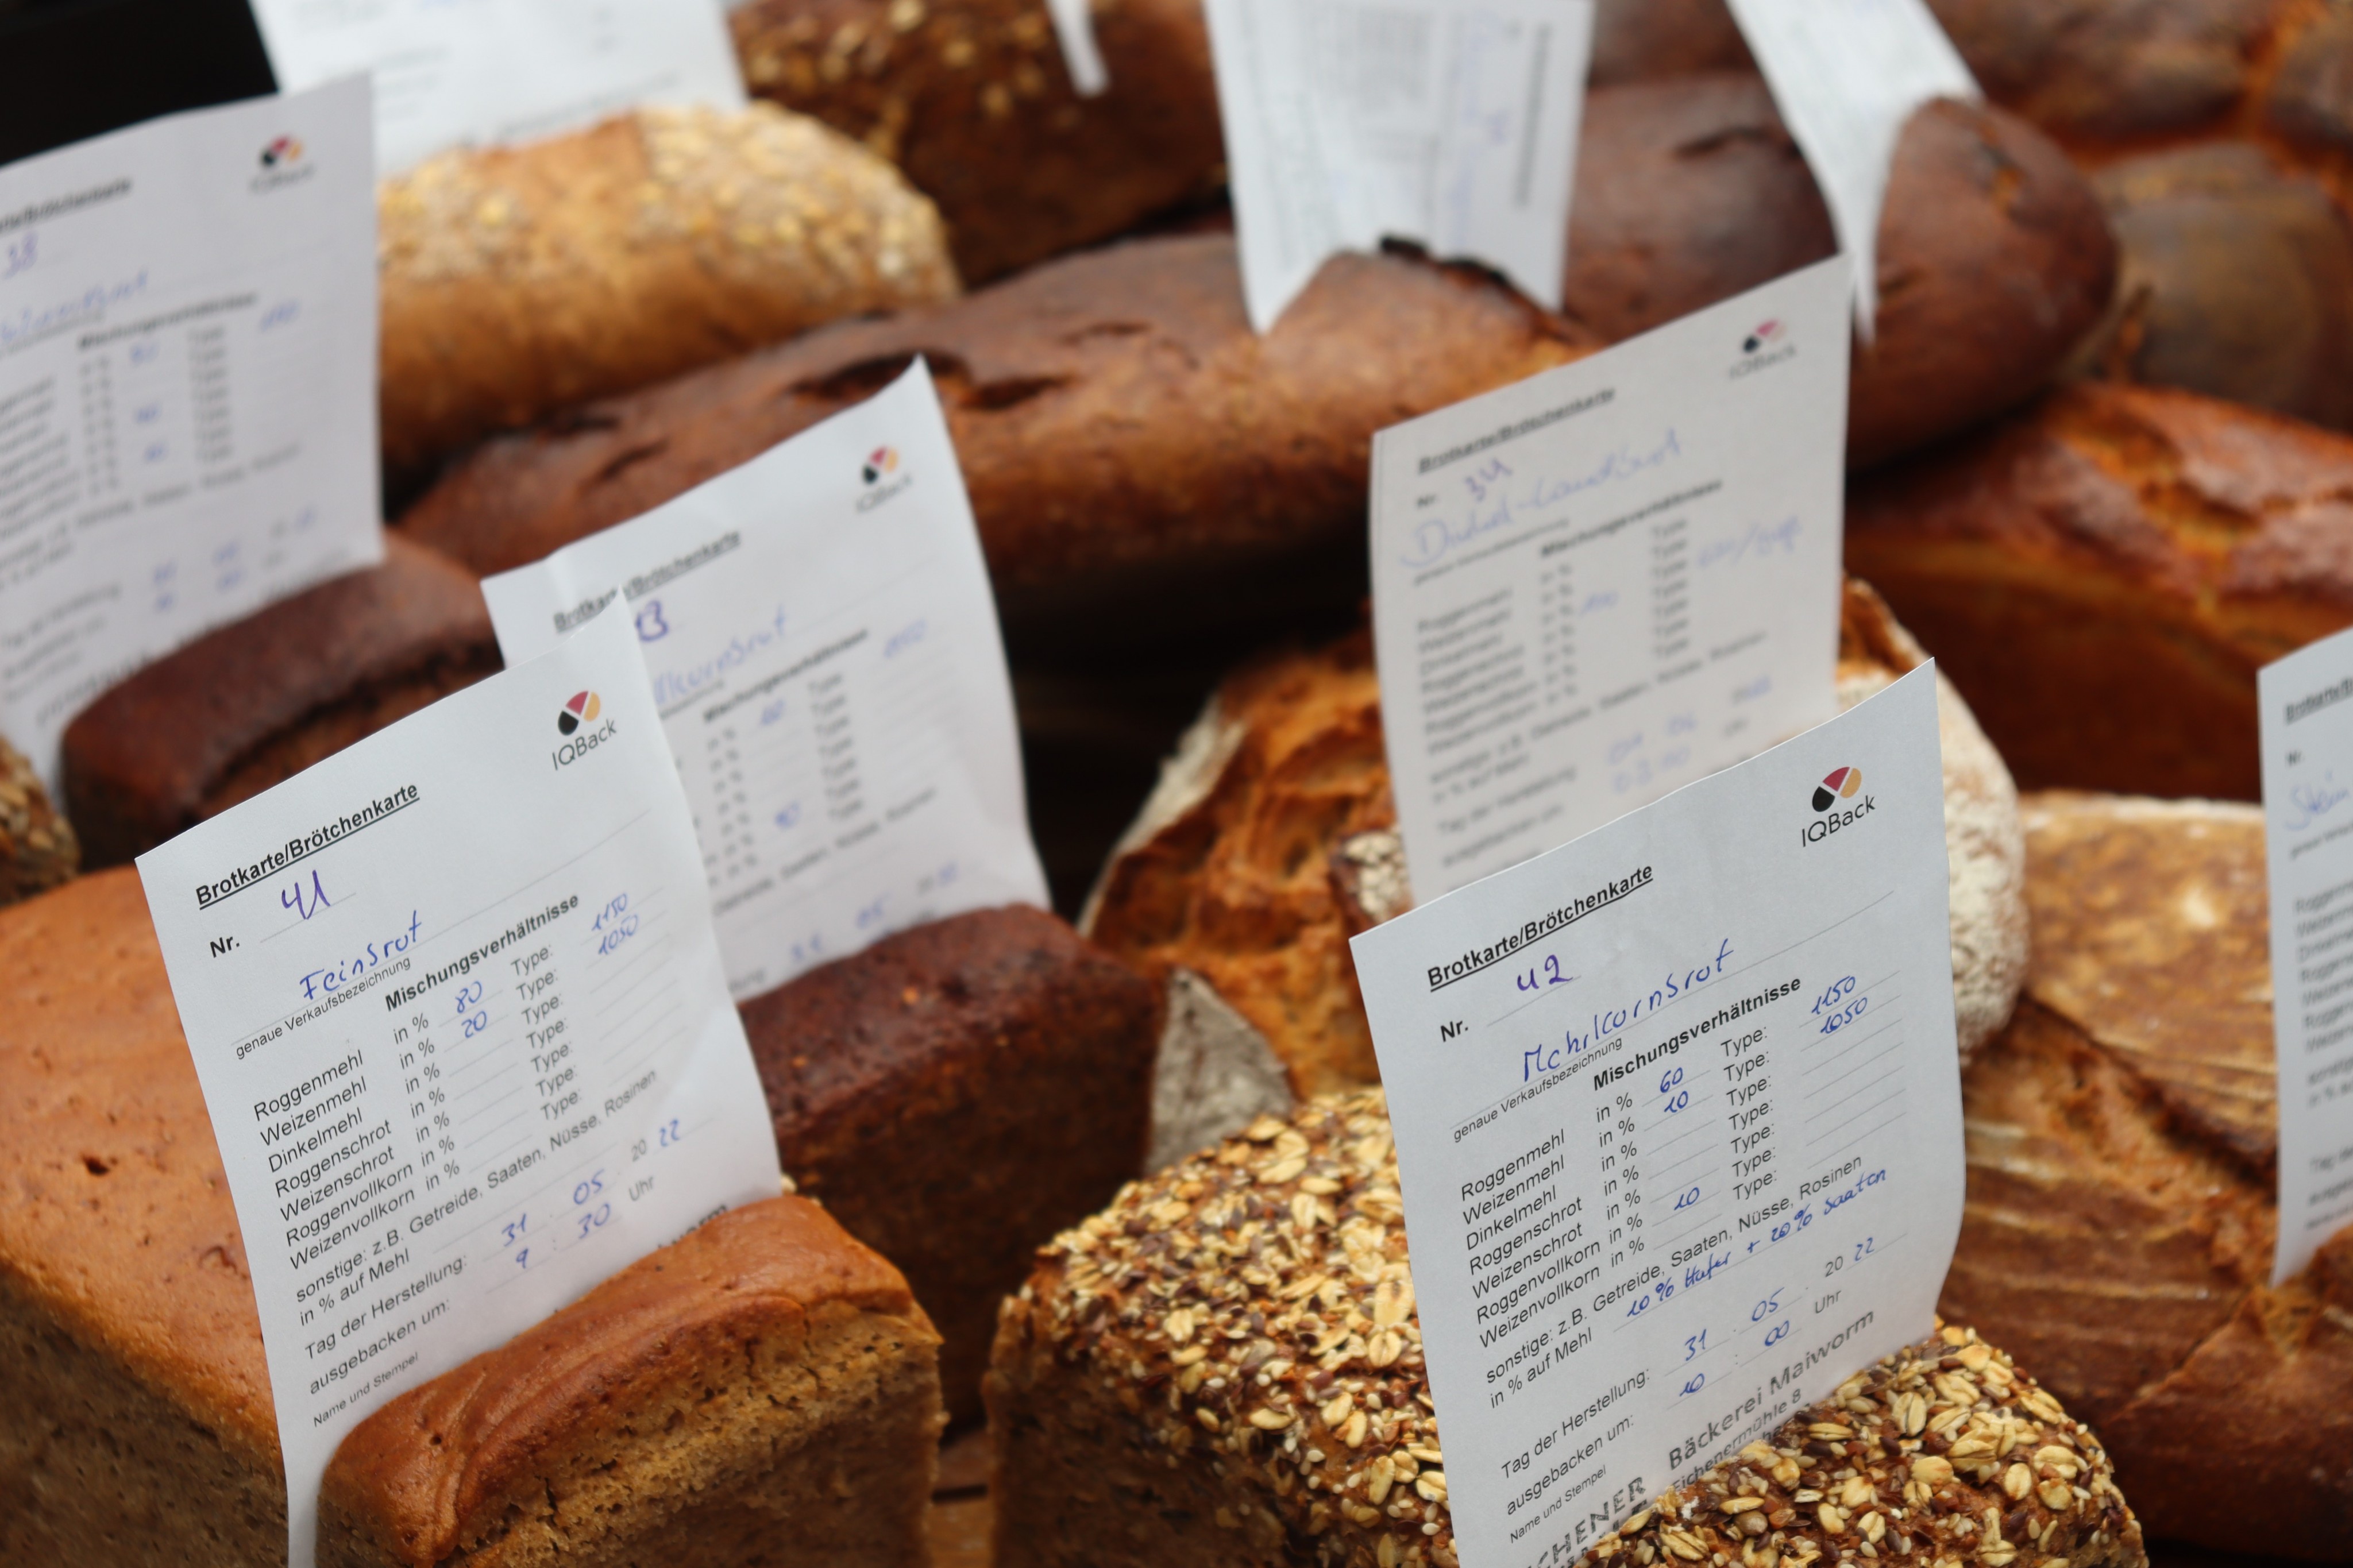 60 Brote von zehn Bäckerbetrieben waren auf dem Prüfstand. von Rebecca Dalhoff/Textwerk Attendorn